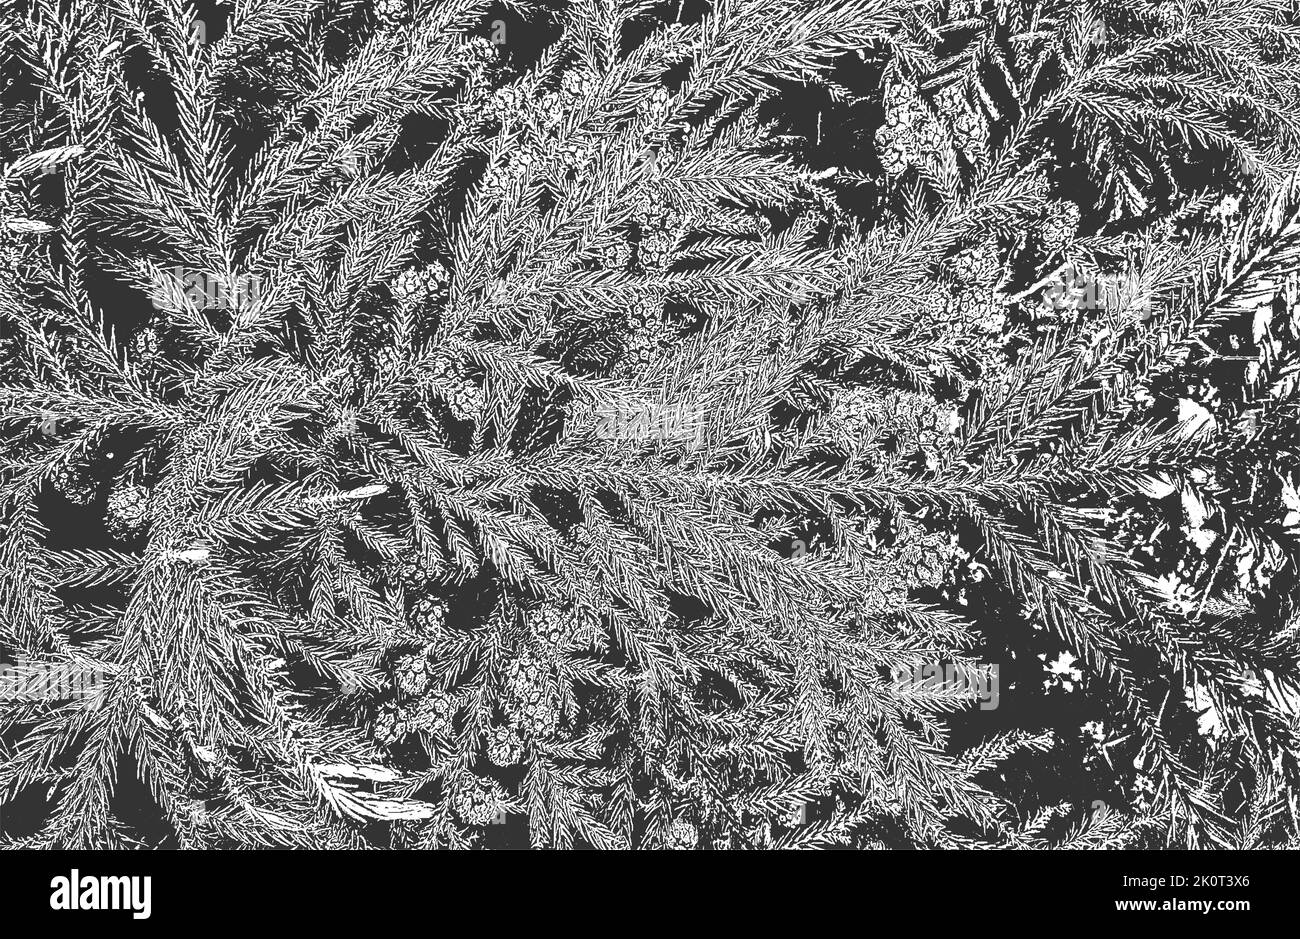 Verängstigte Overlay Nahaufnahme Textur von Kiefer Kegel, Nadeln. Grunge schwarz und weiß Hintergrund. Abstrakte Halbton Vektor-Illustration Stock Vektor